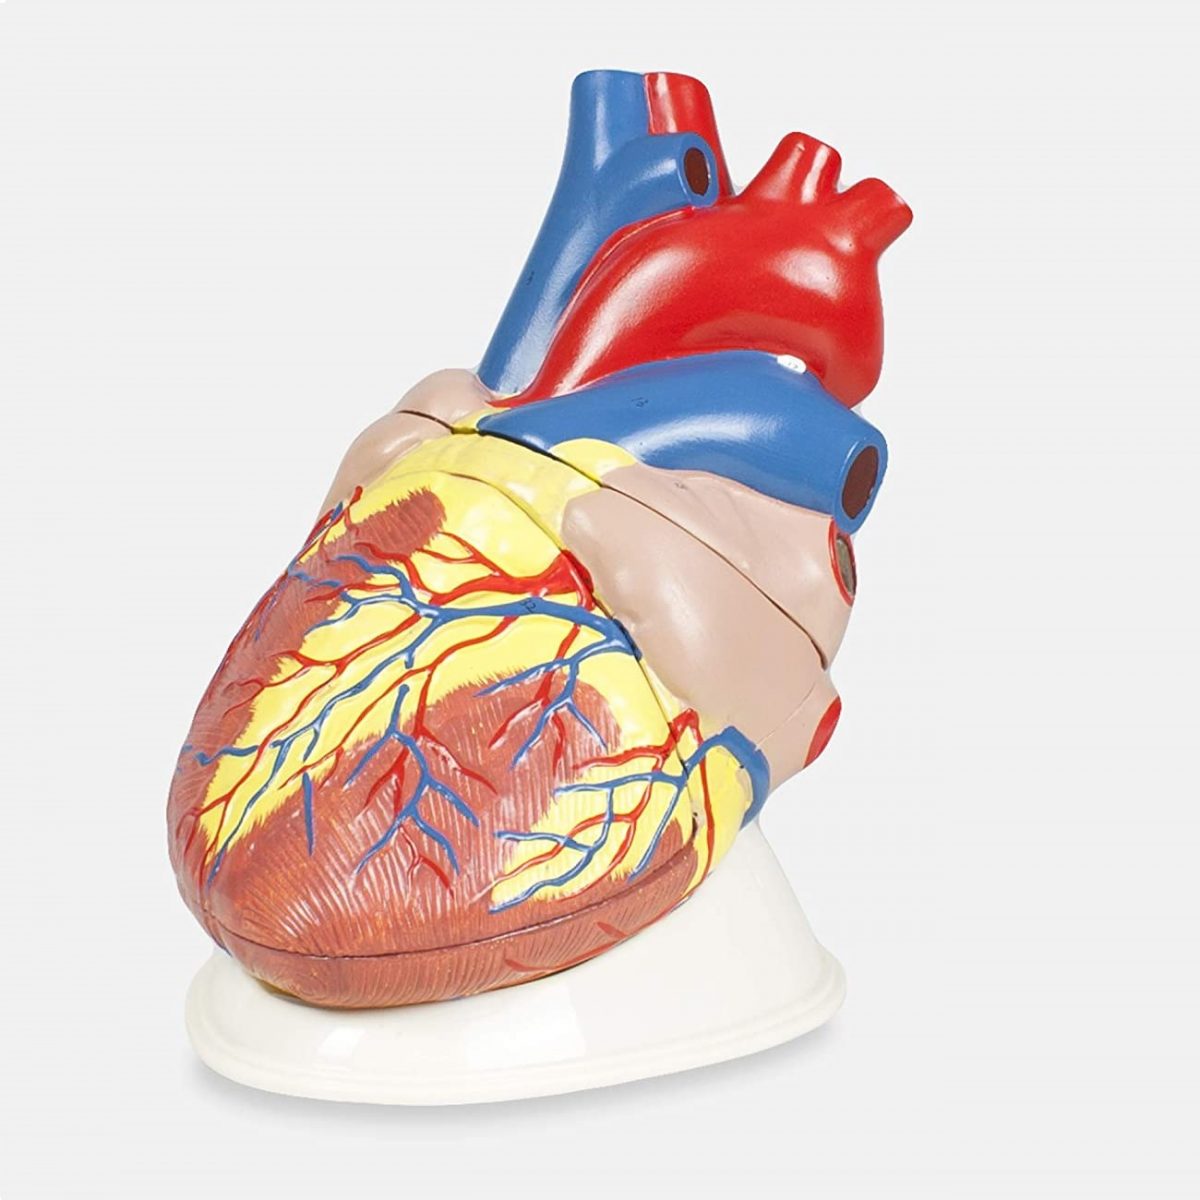 Μοντέλο Καρδιάς 4x - Βιολογία - Heart Model 4x - why.gr